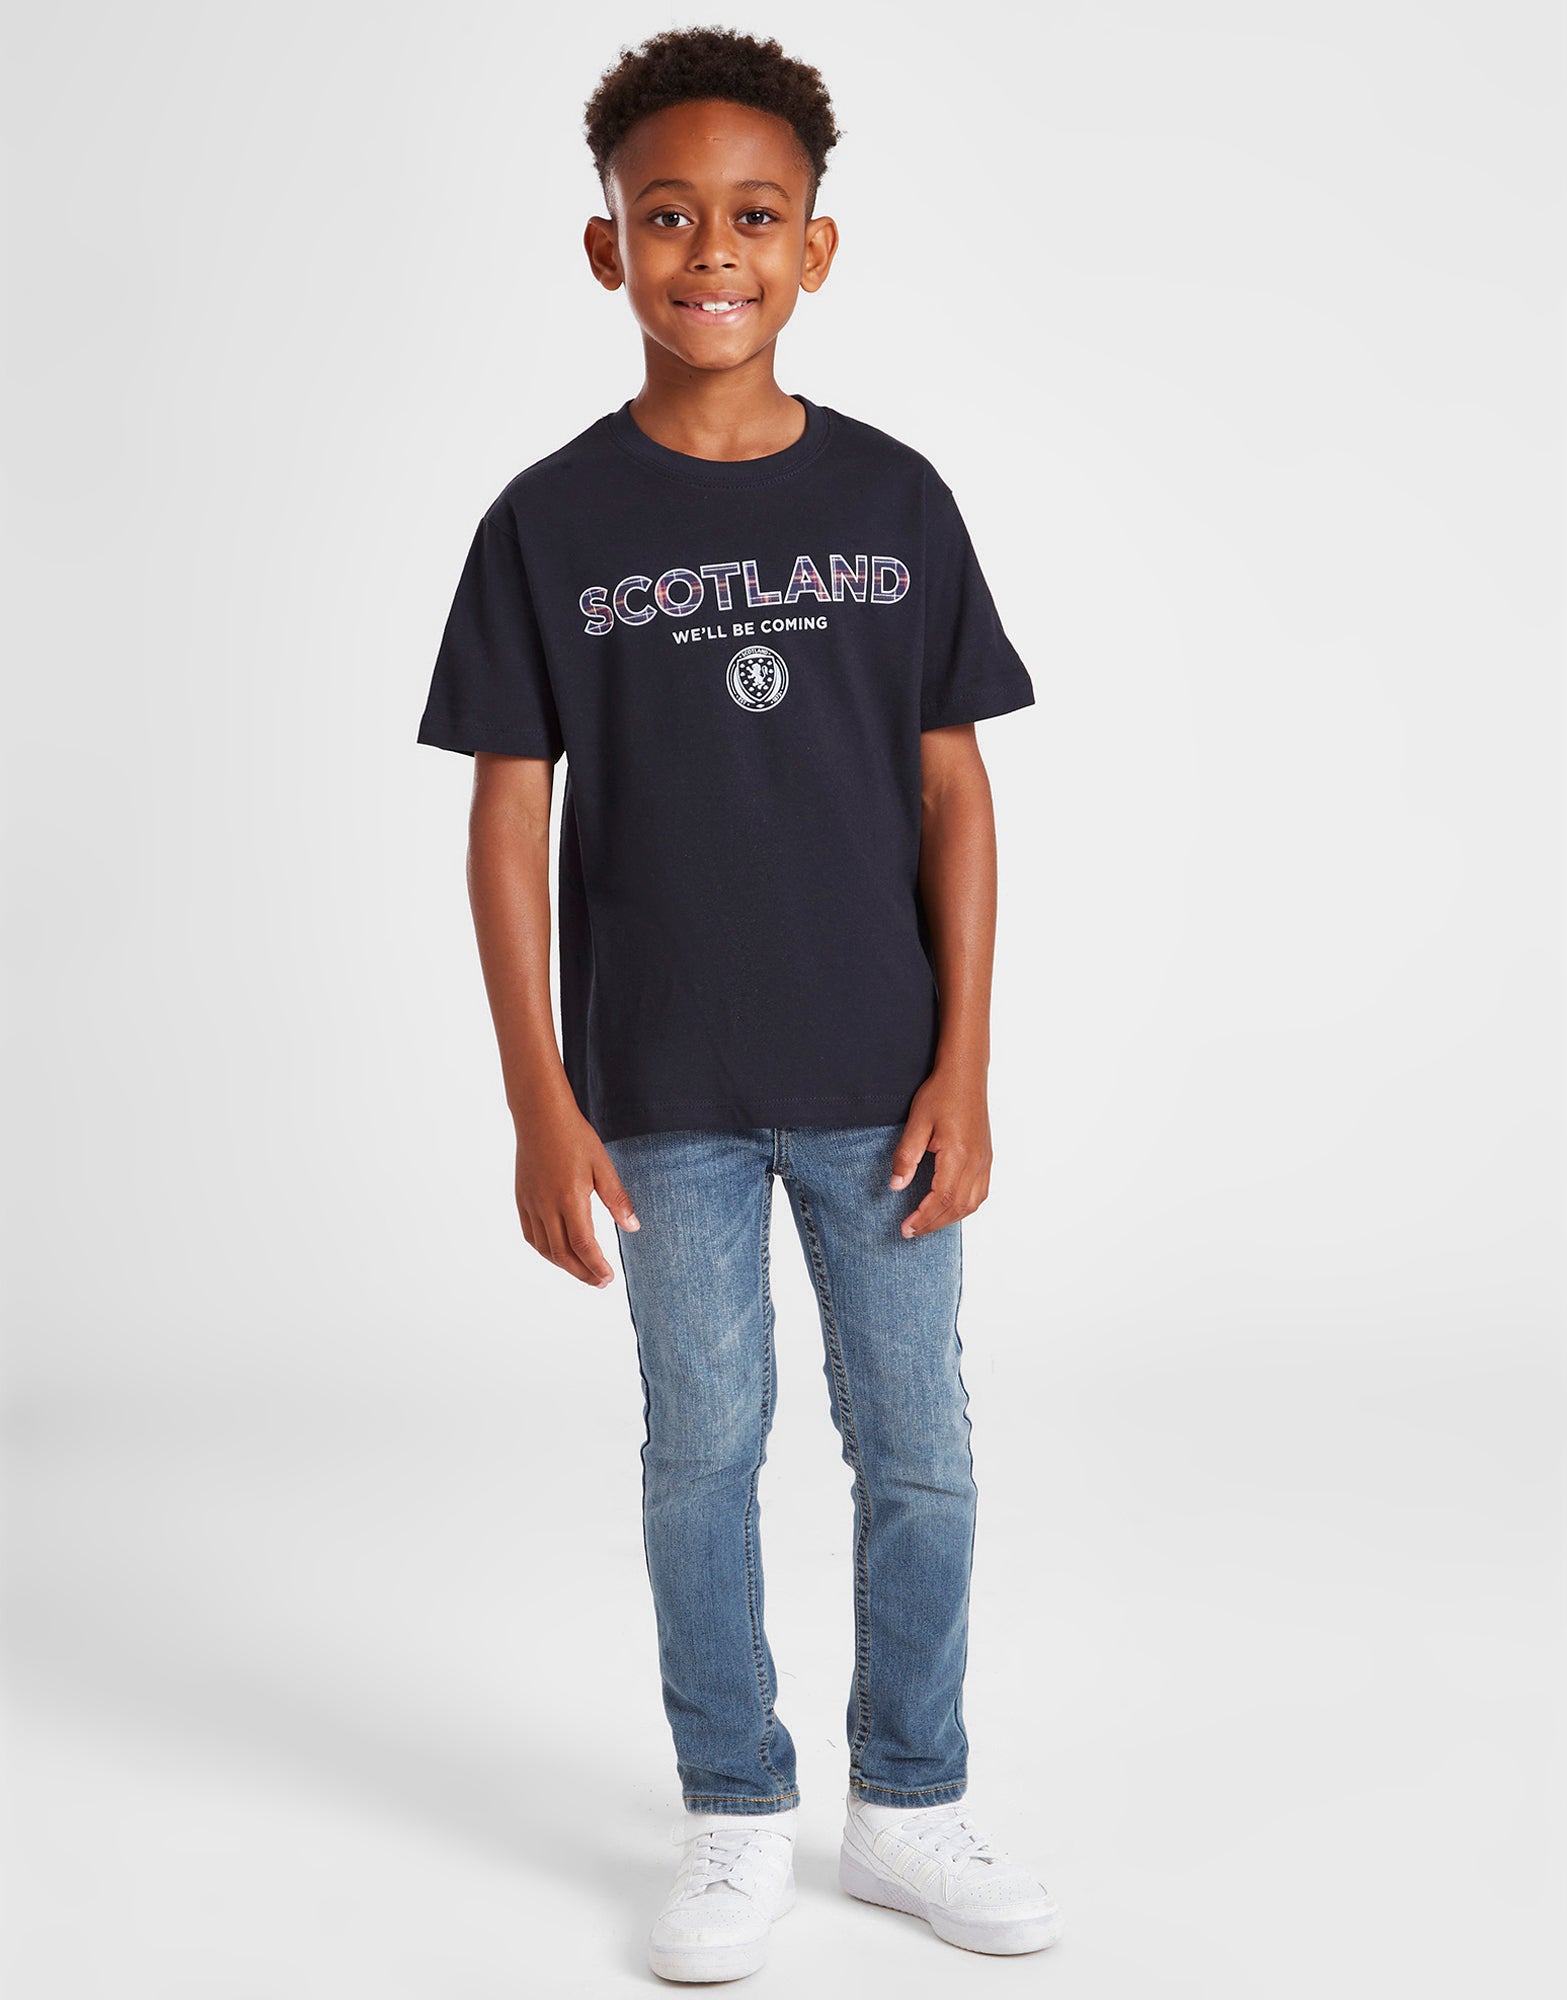 Official Team Scotland Kids T-Shirt - Navy - The World Football Store